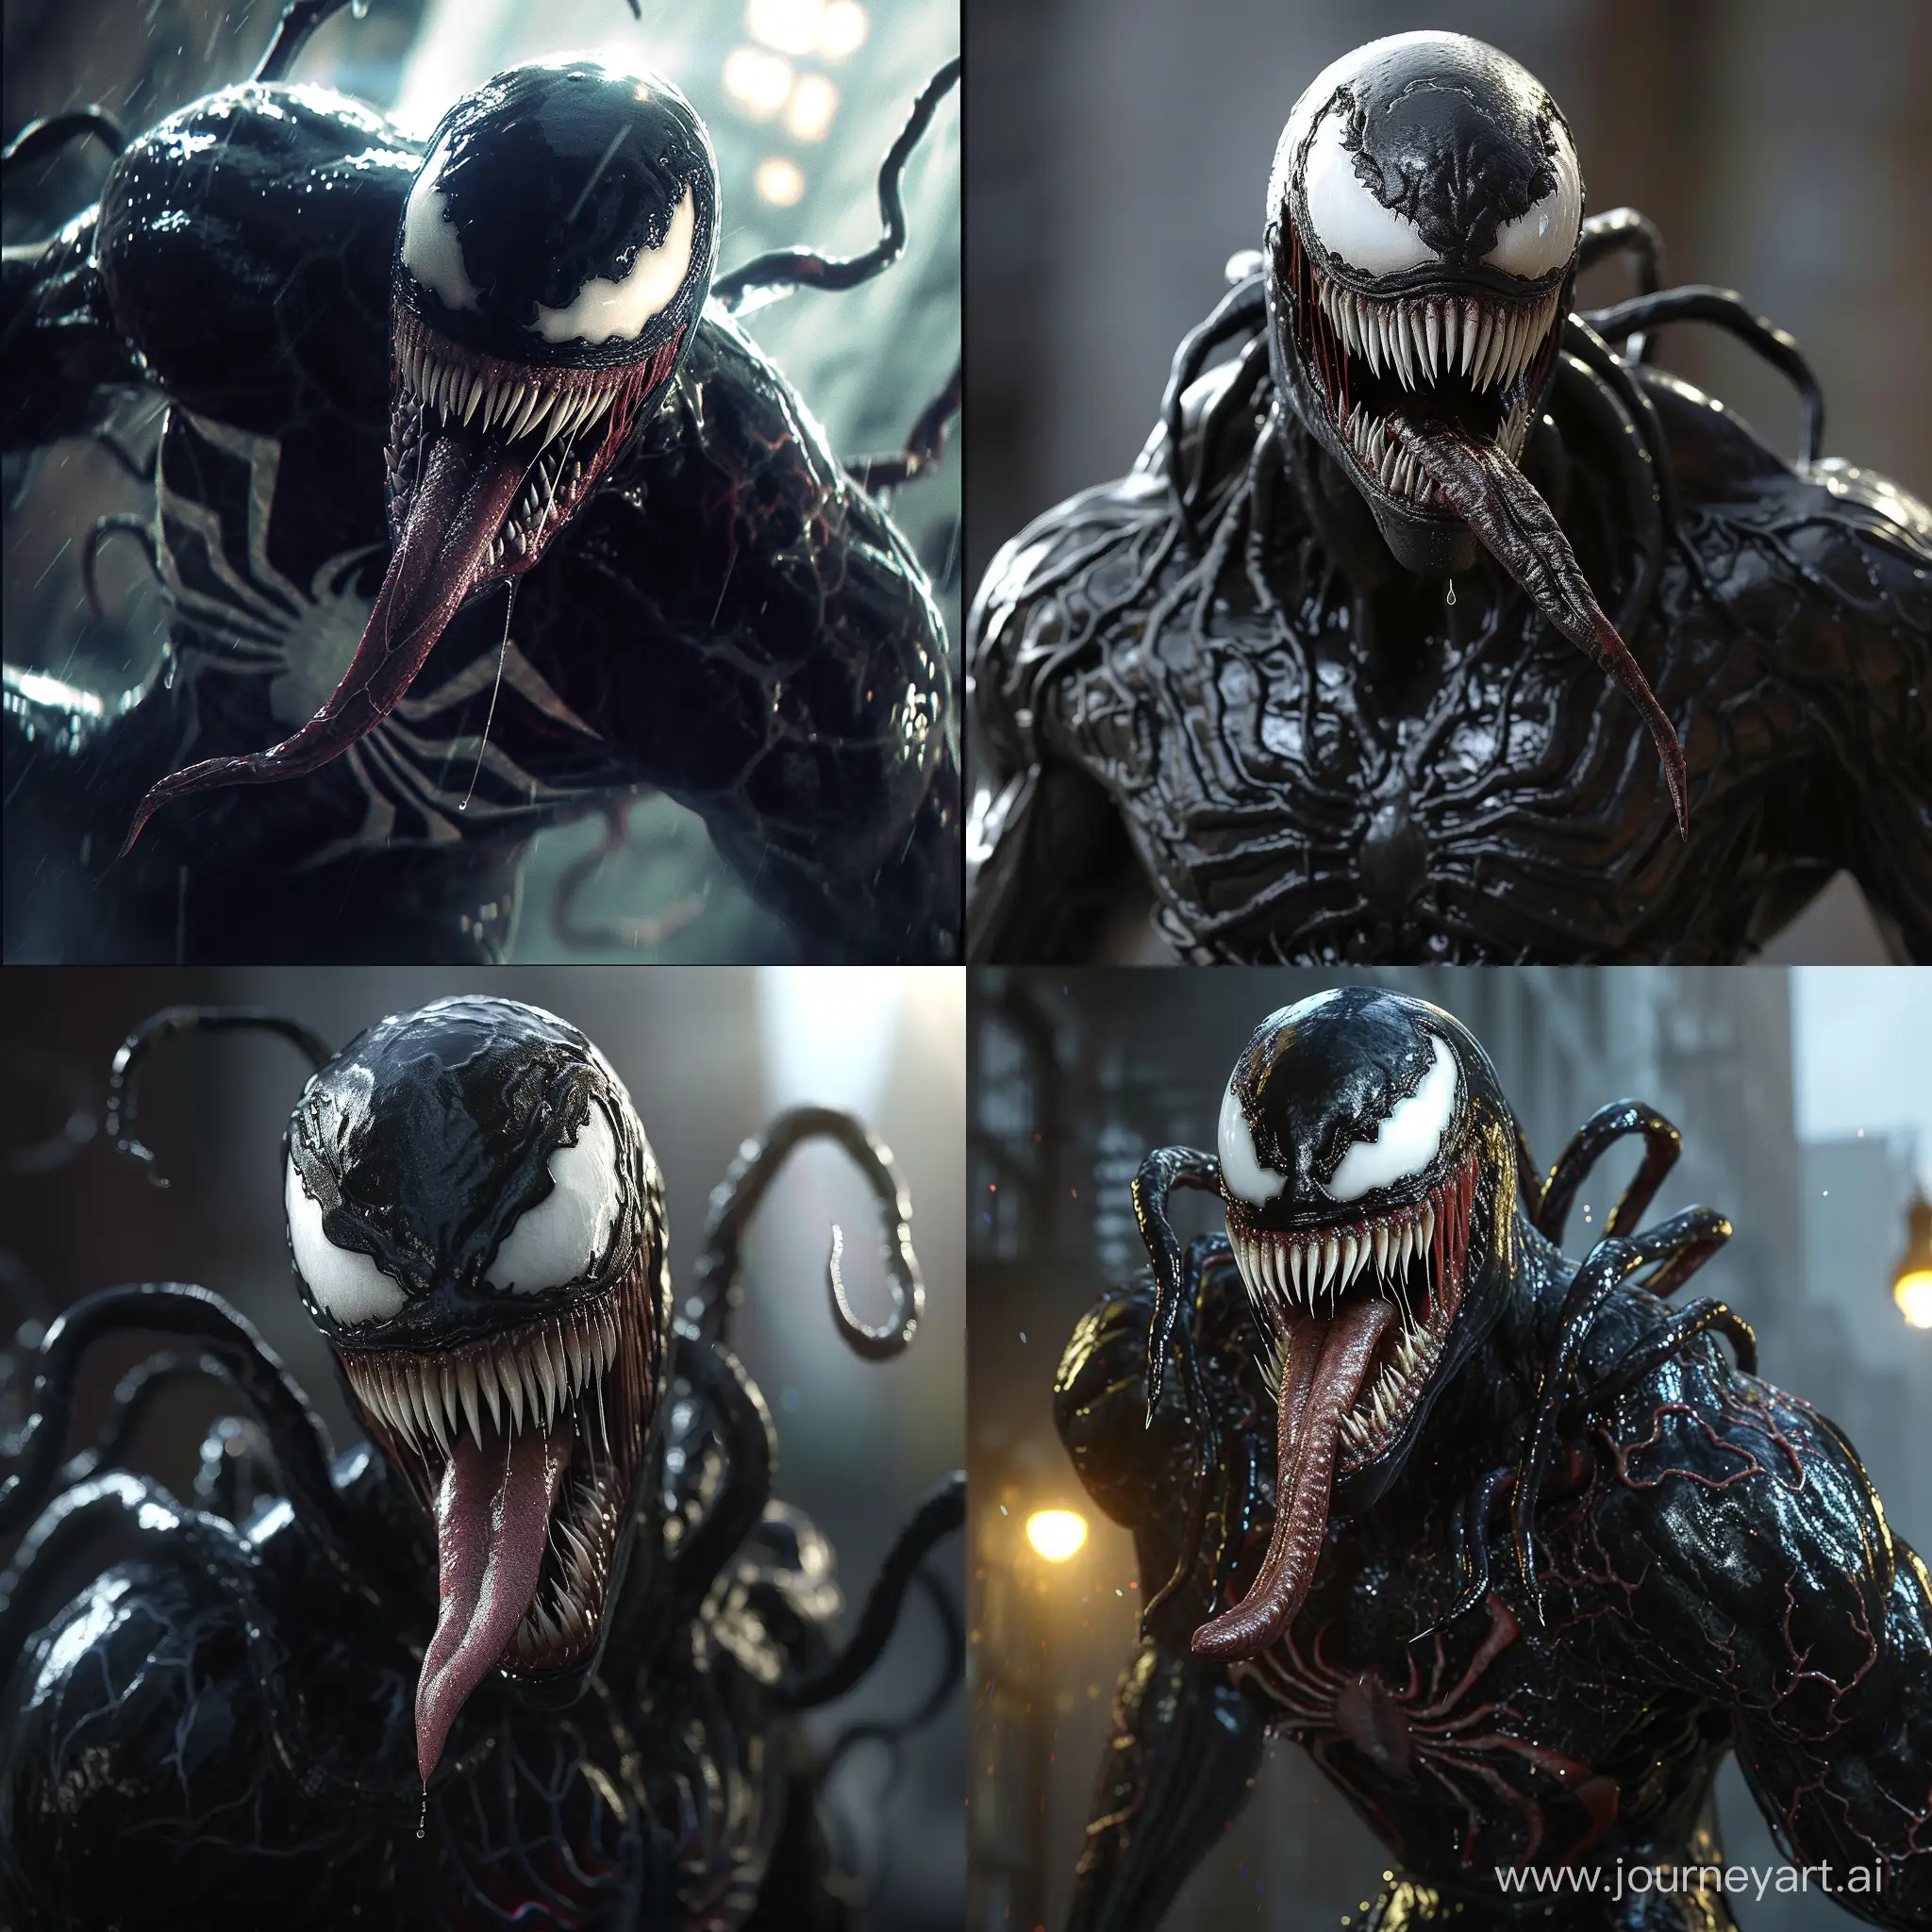 Realistic-SpiderMan-and-Venom-Symbiote-Movie-Scene